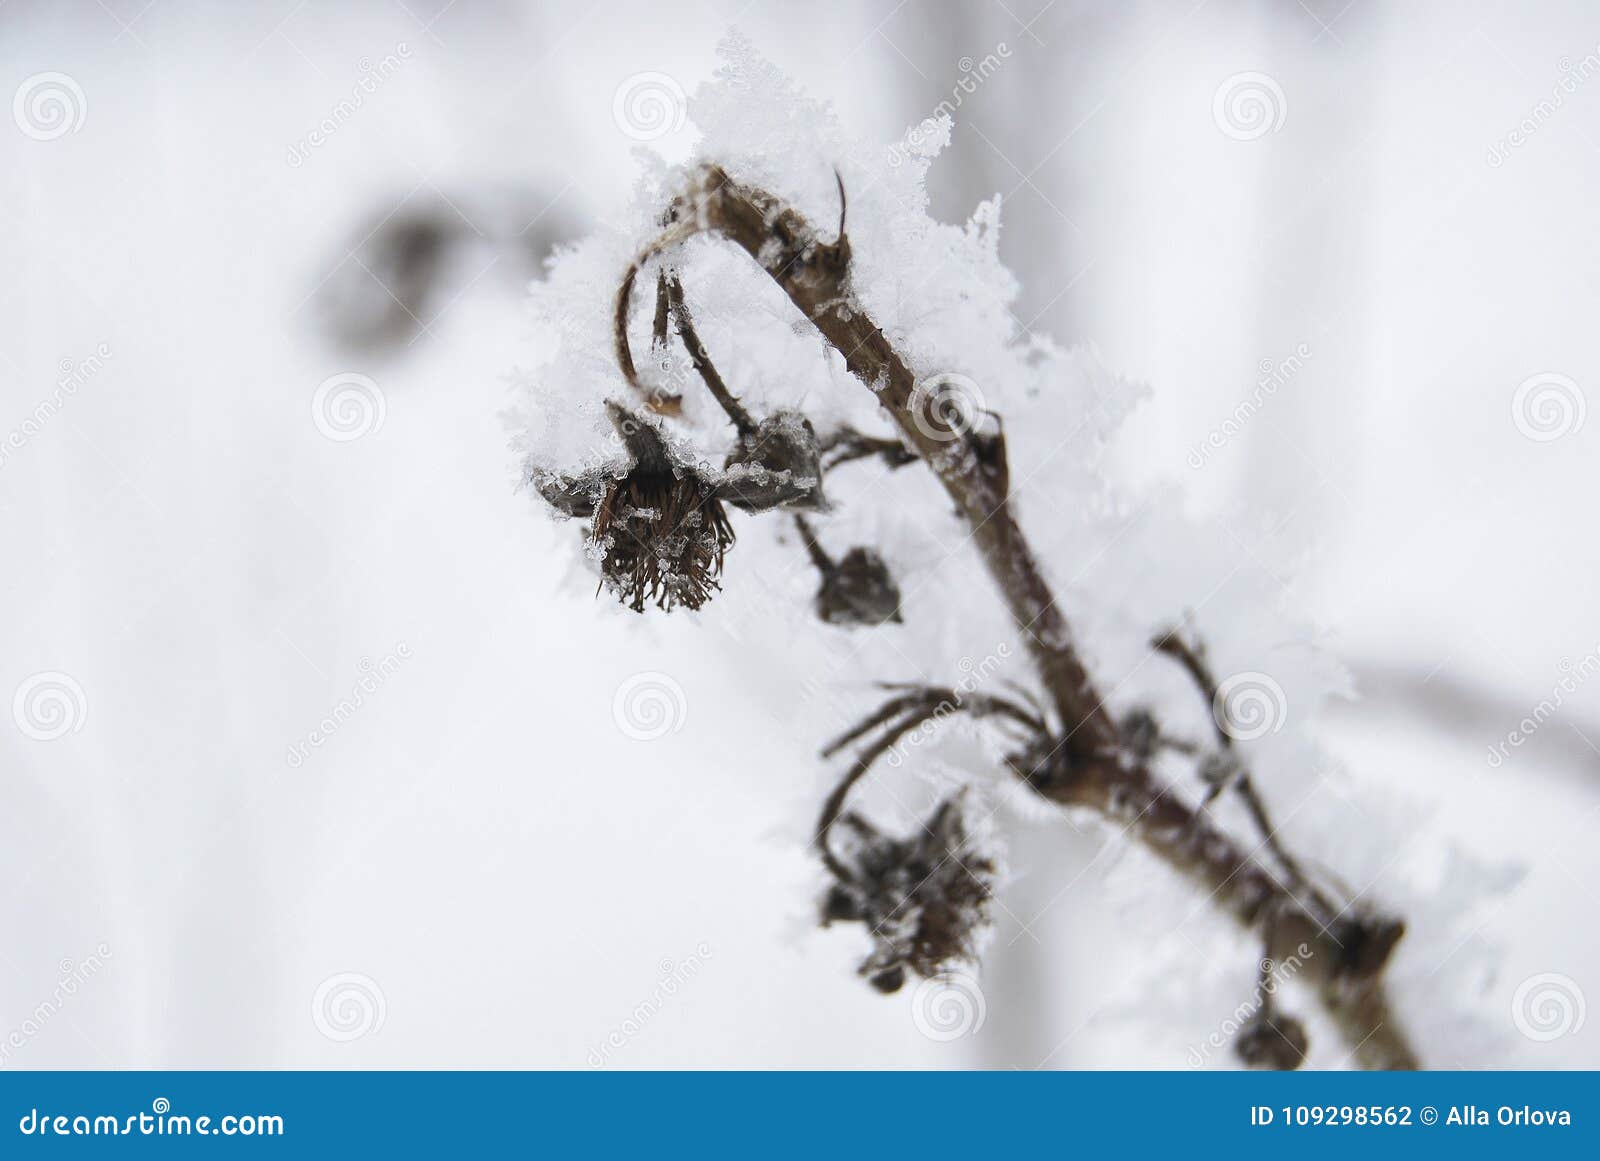 Un ramo asciutto del lampone, coperto di brina un giorno gelido Un giardino nell'inverno